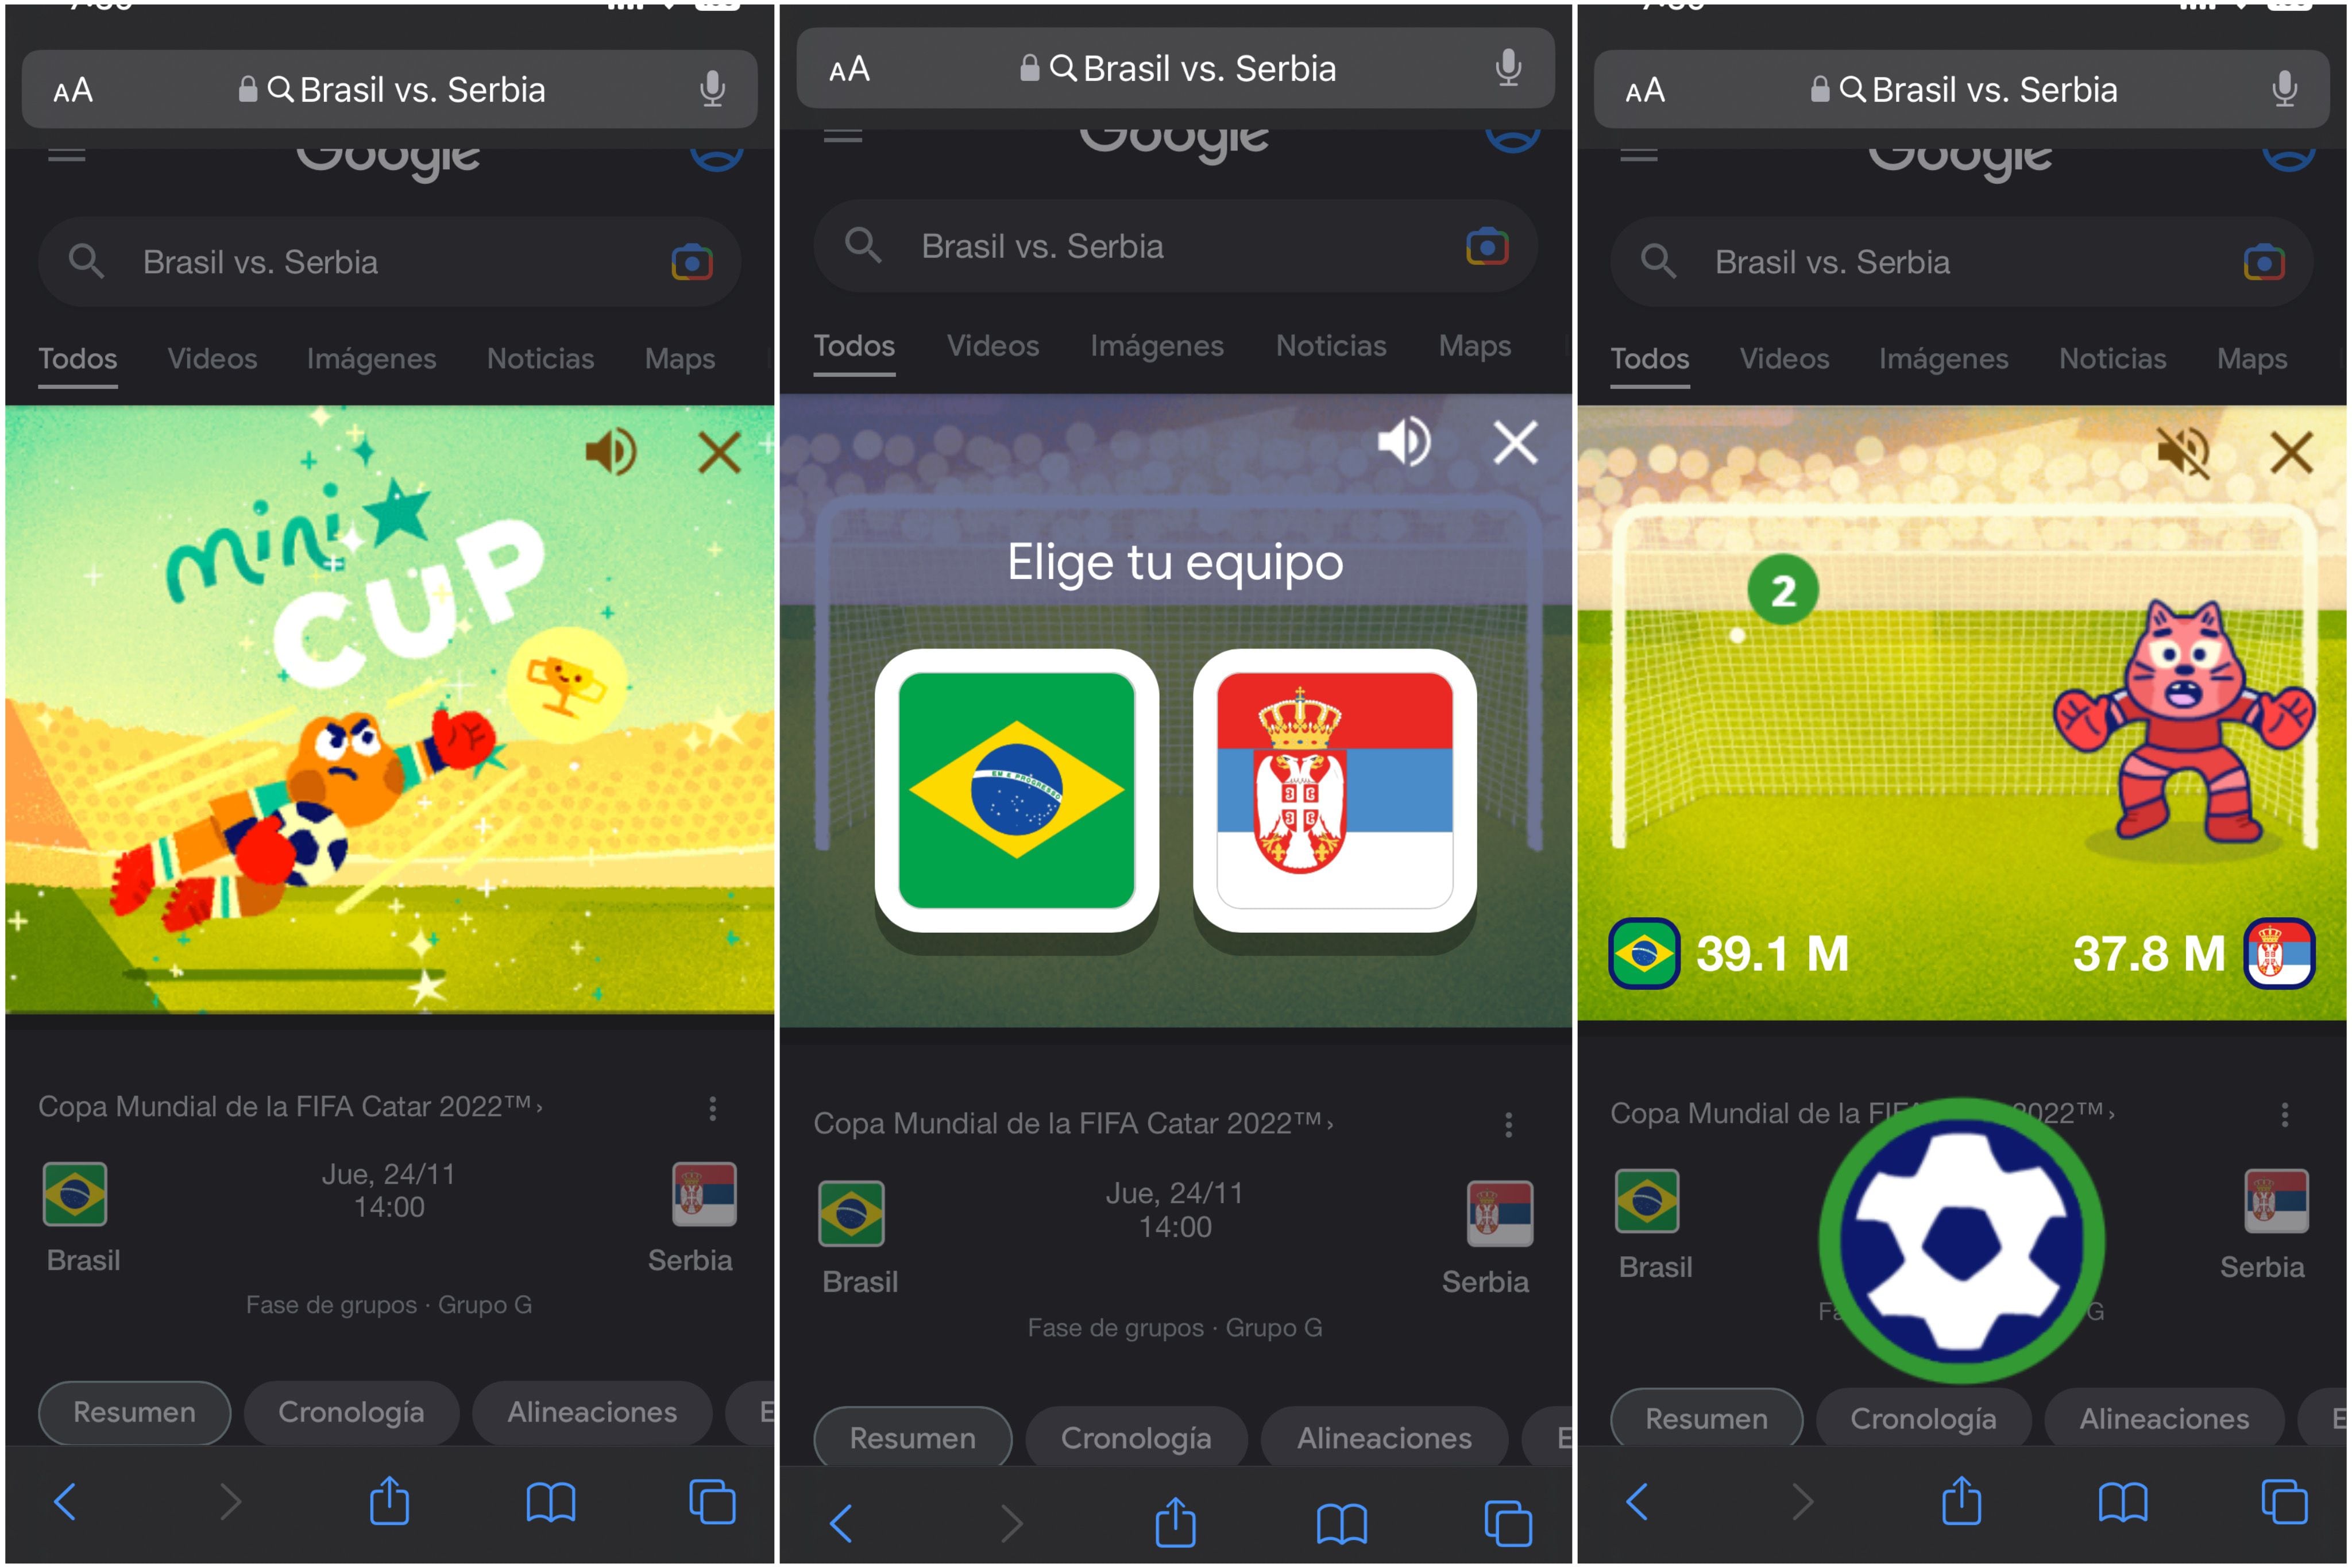 FIFA 23: cómo acceder a la Web App y descargar la Companion App, Videojuegos, FUT 23, España, México, USA, TECNOLOGIA